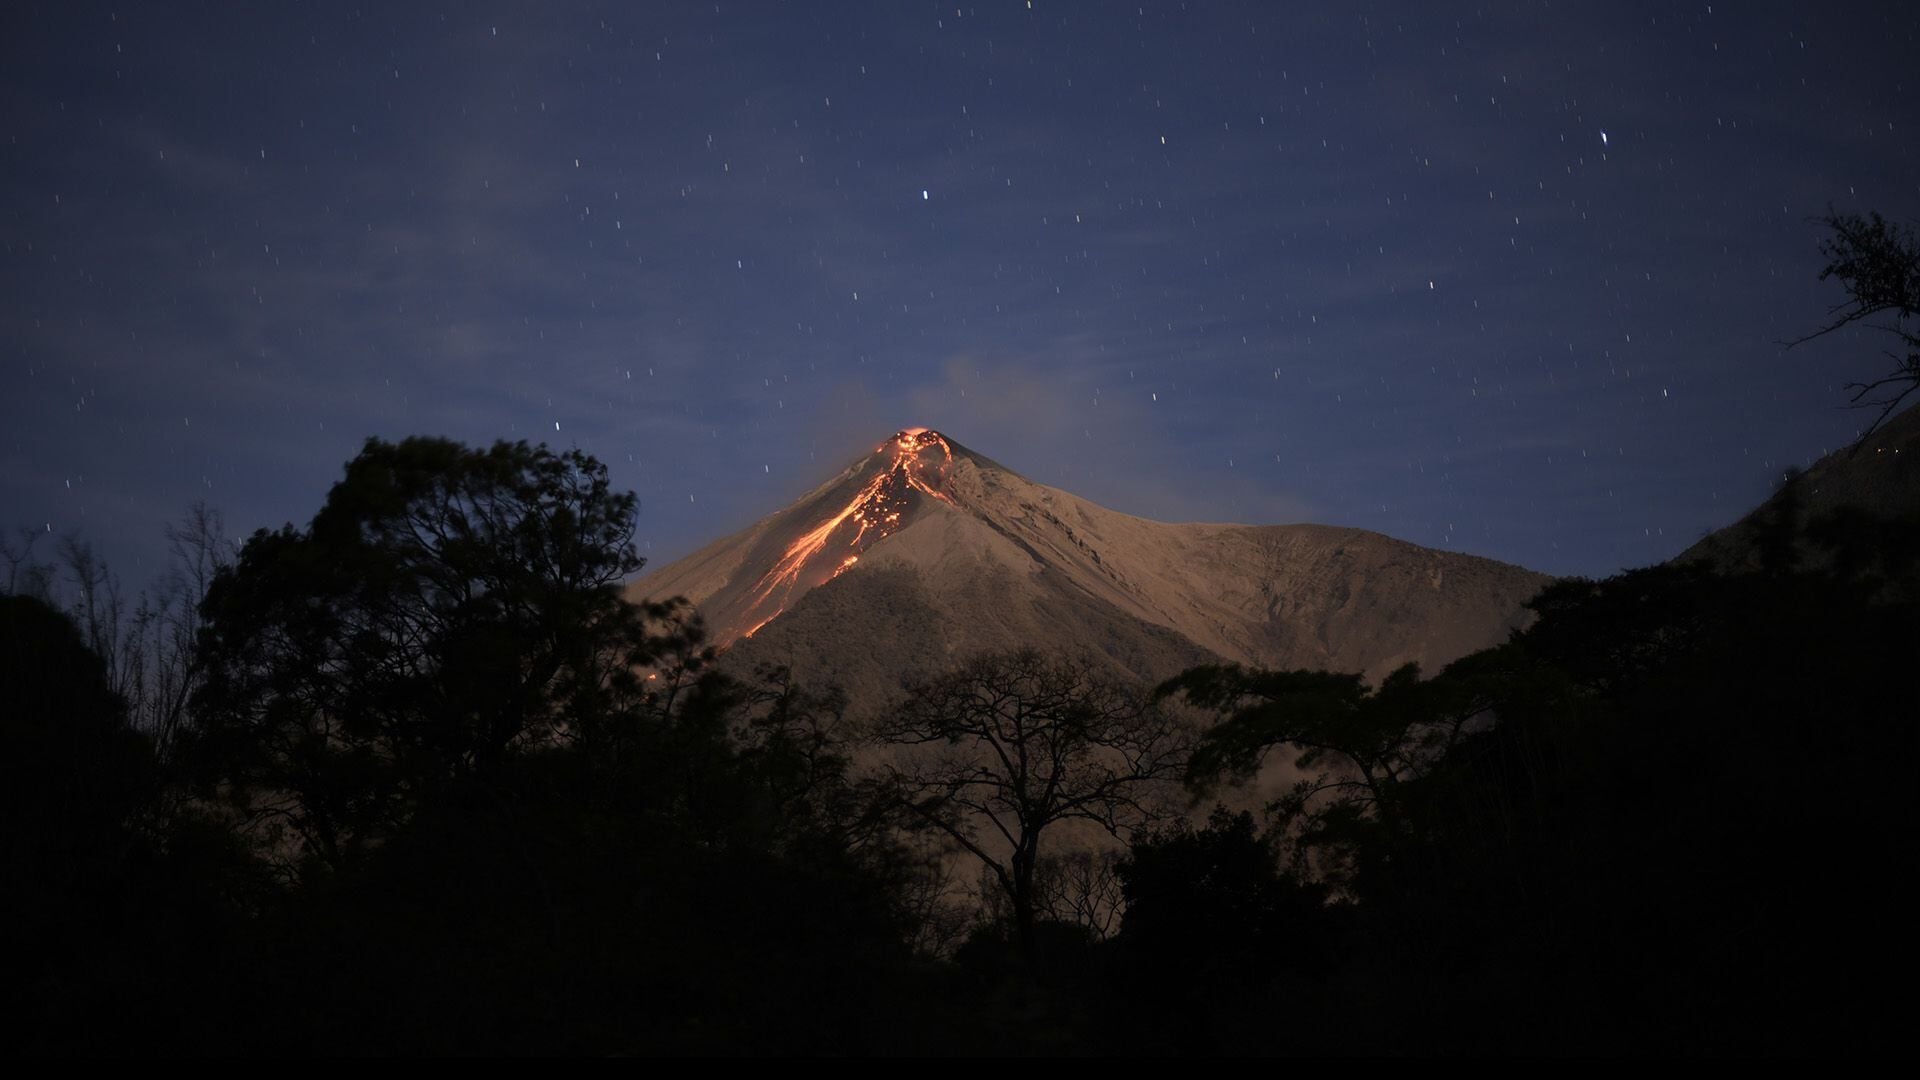 Volcán de Fuego: reporte de su actividad y alerta de riesgo este día